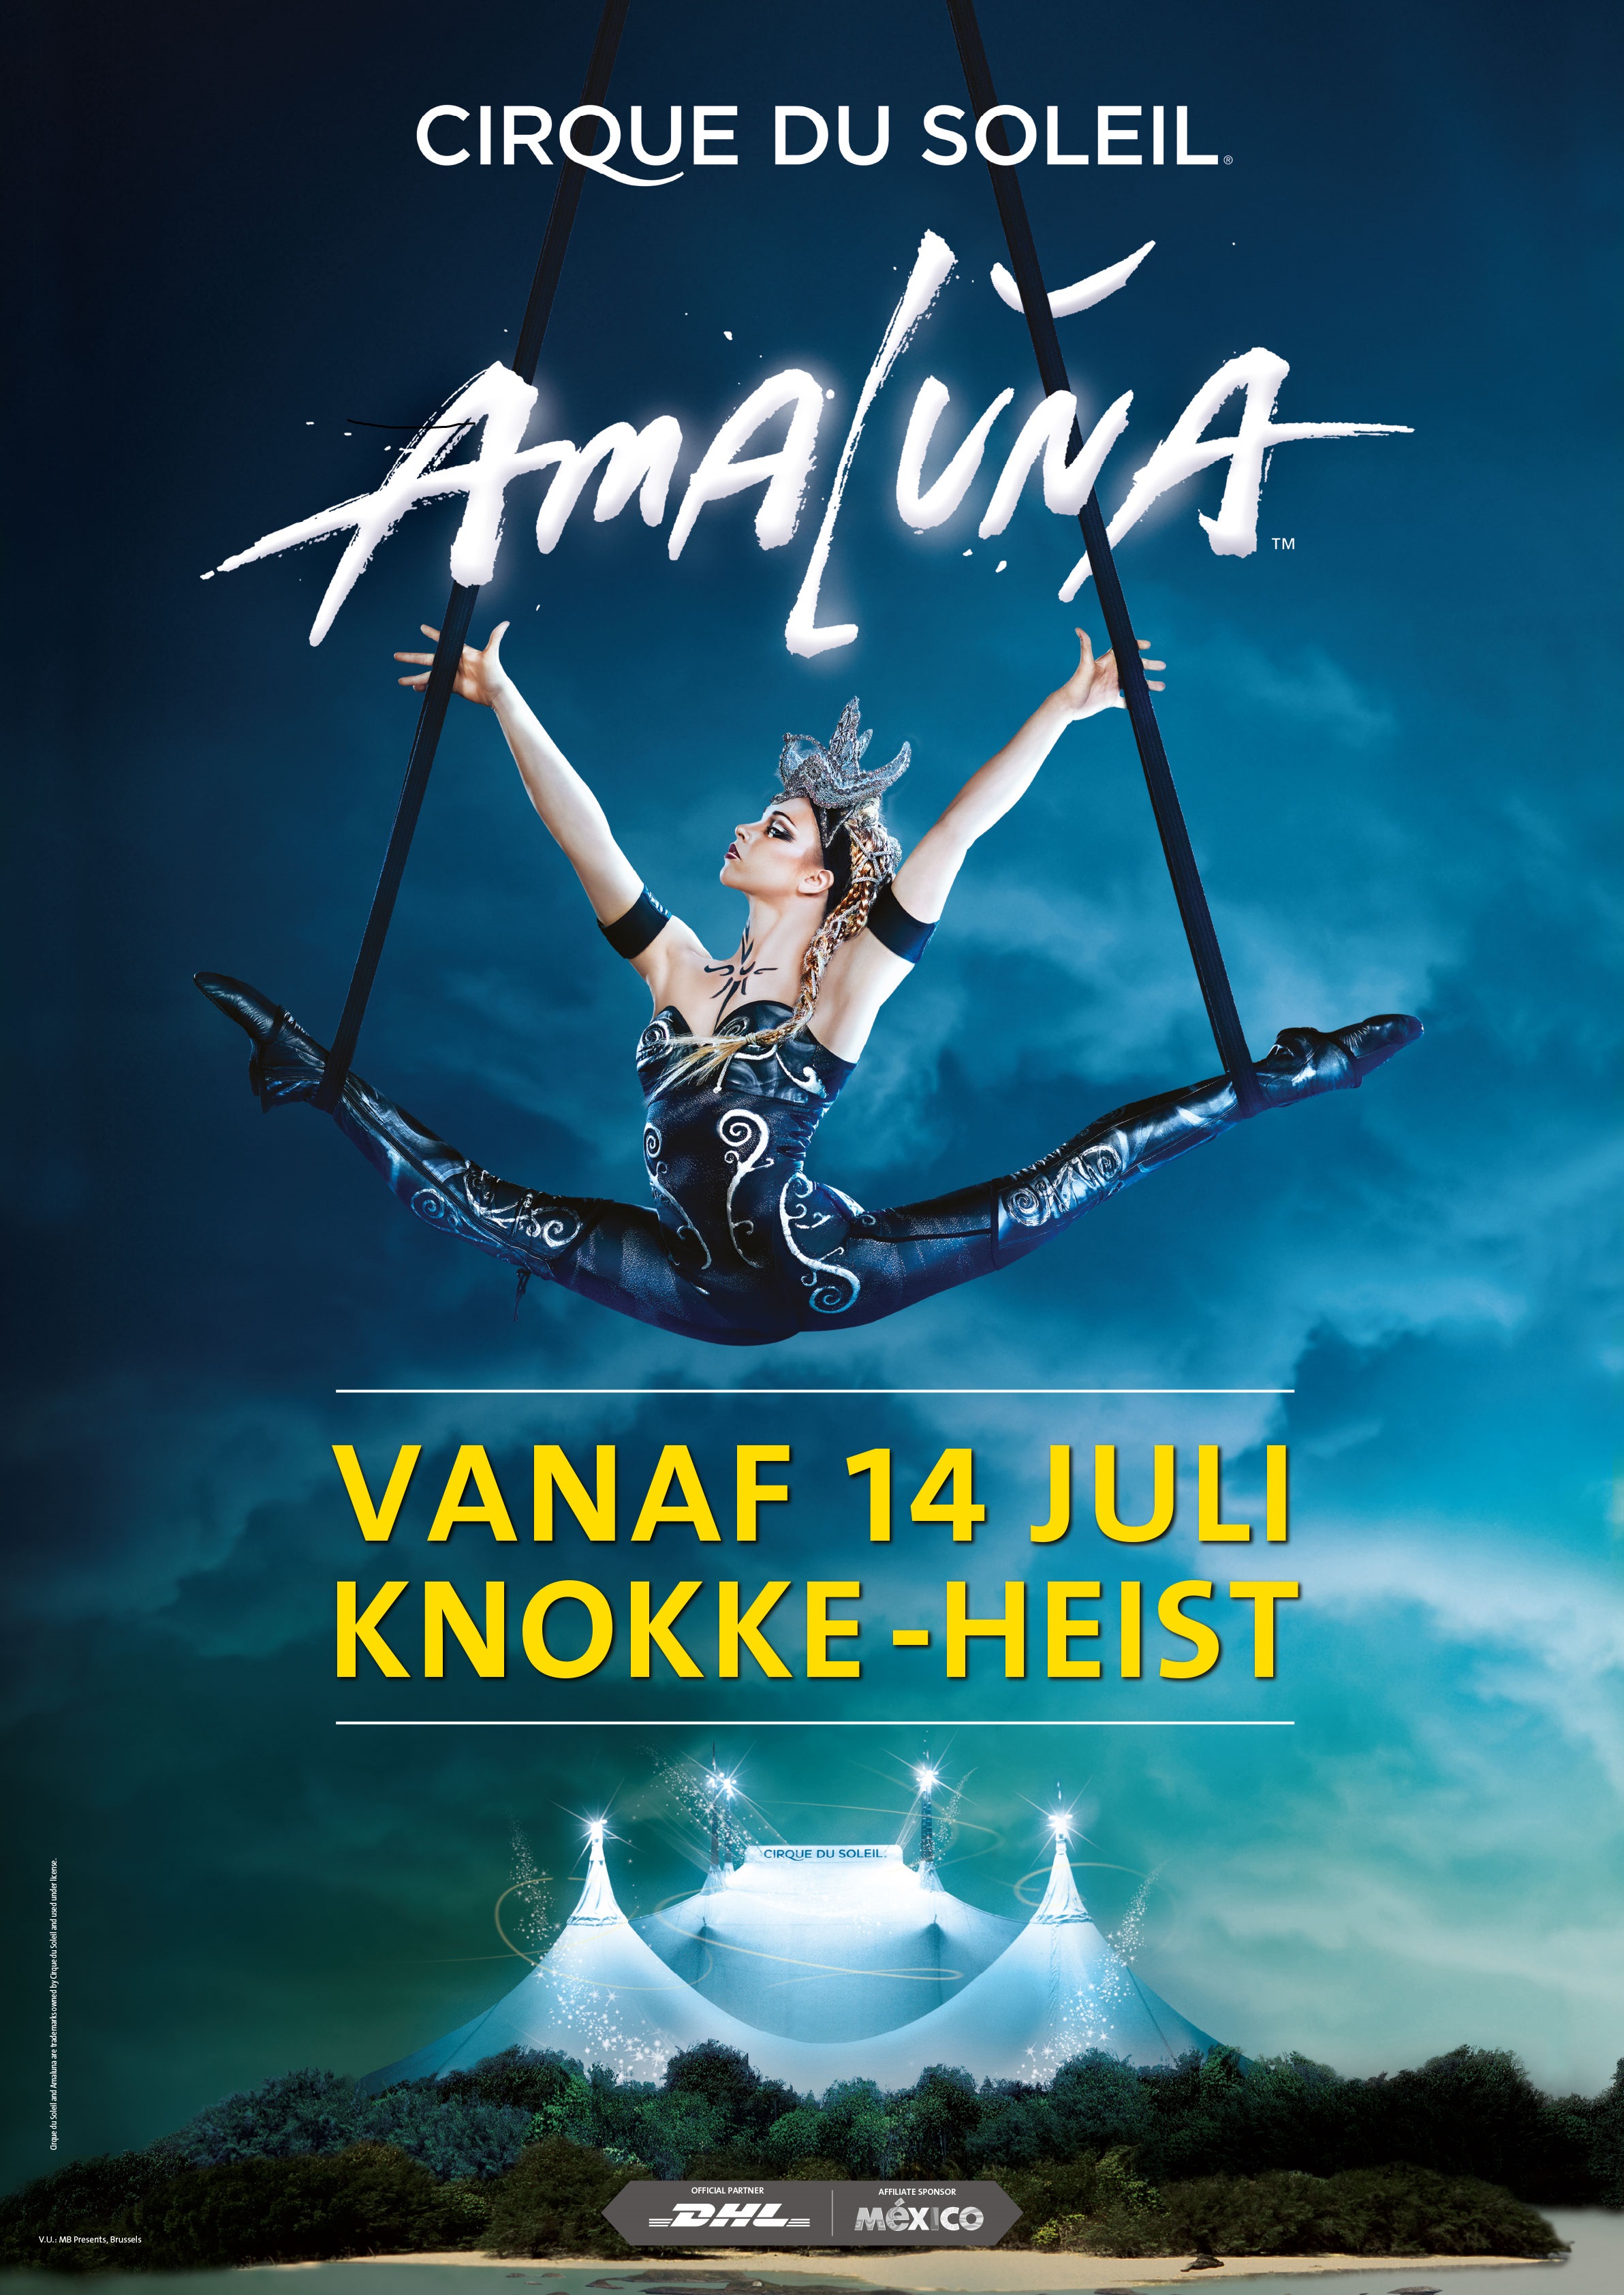 Cirque du Soleil Amaluna deze zomer in Knokke-Heist.